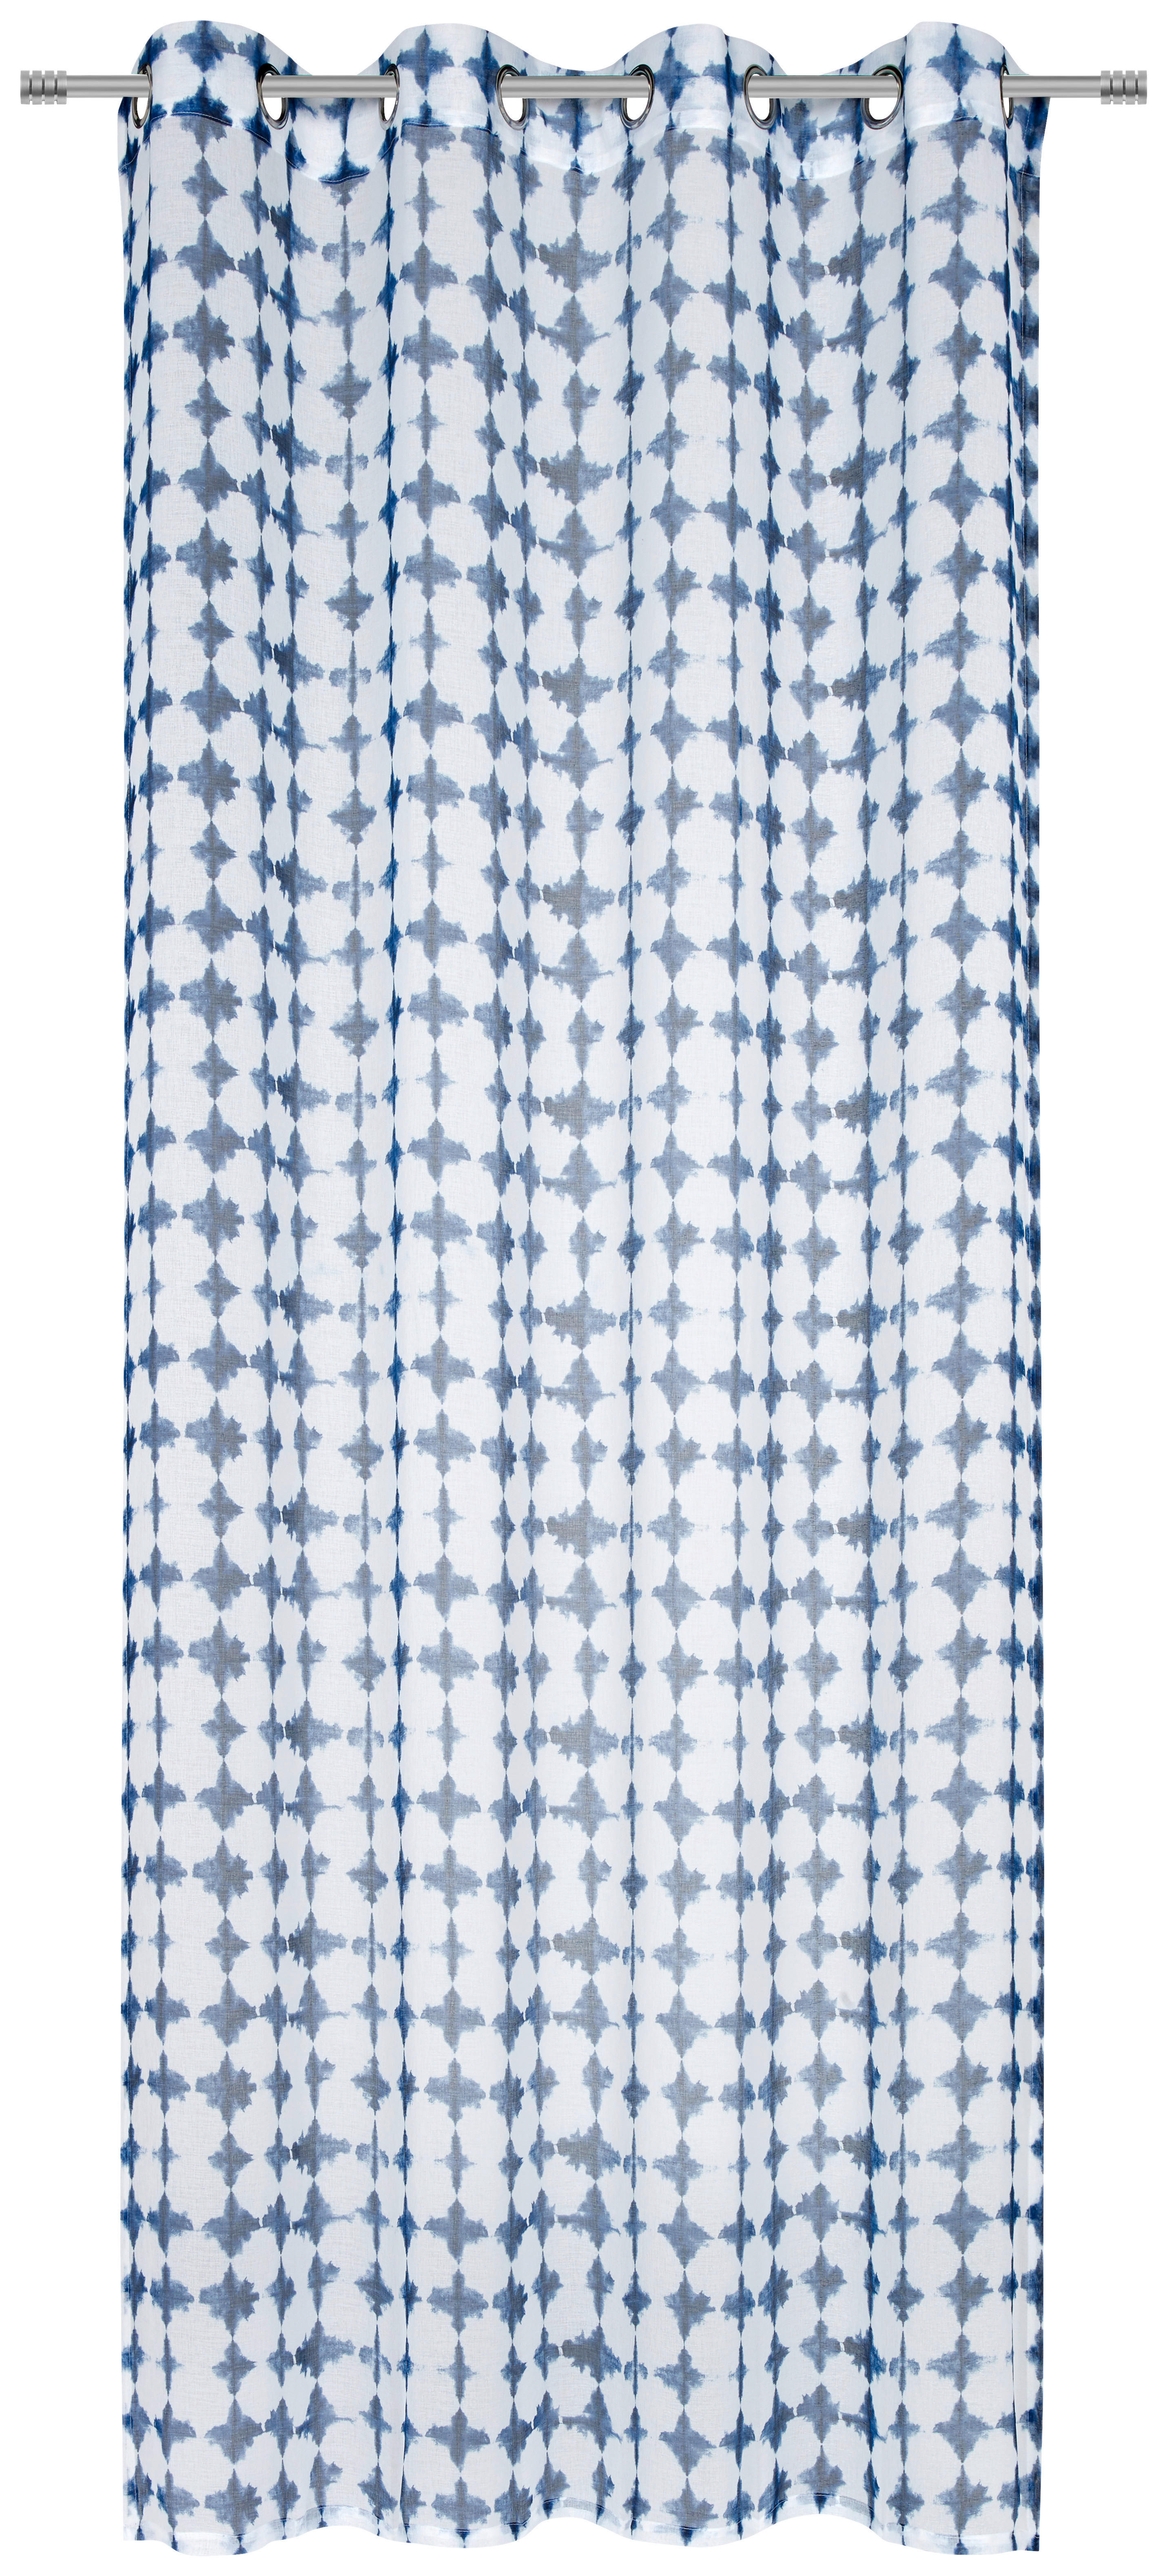 ZAVESA SA KARIKAMA plava, bela - bela/plava, Trendi, tekstil (135/245cm) - Esposa